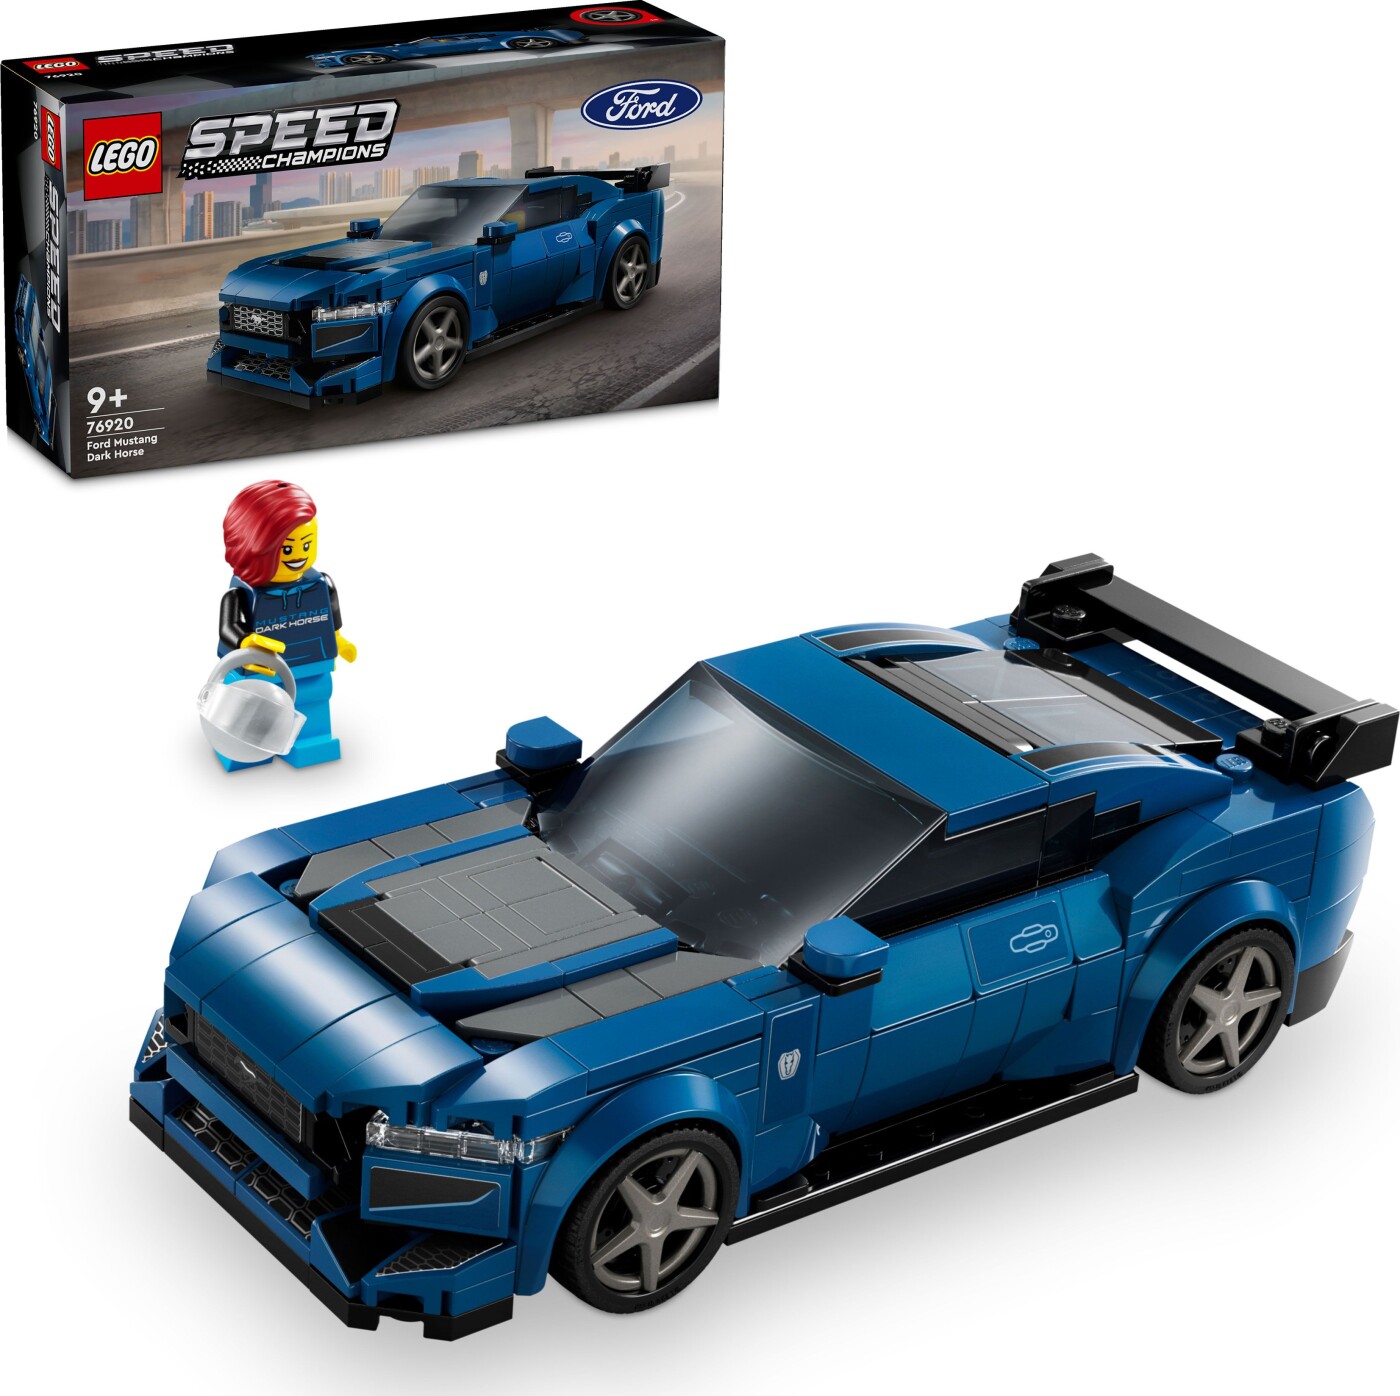 Billede af Lego Speed Champions - Ford Mustang Dark Horse-sportsvogn - 76920 hos Gucca.dk